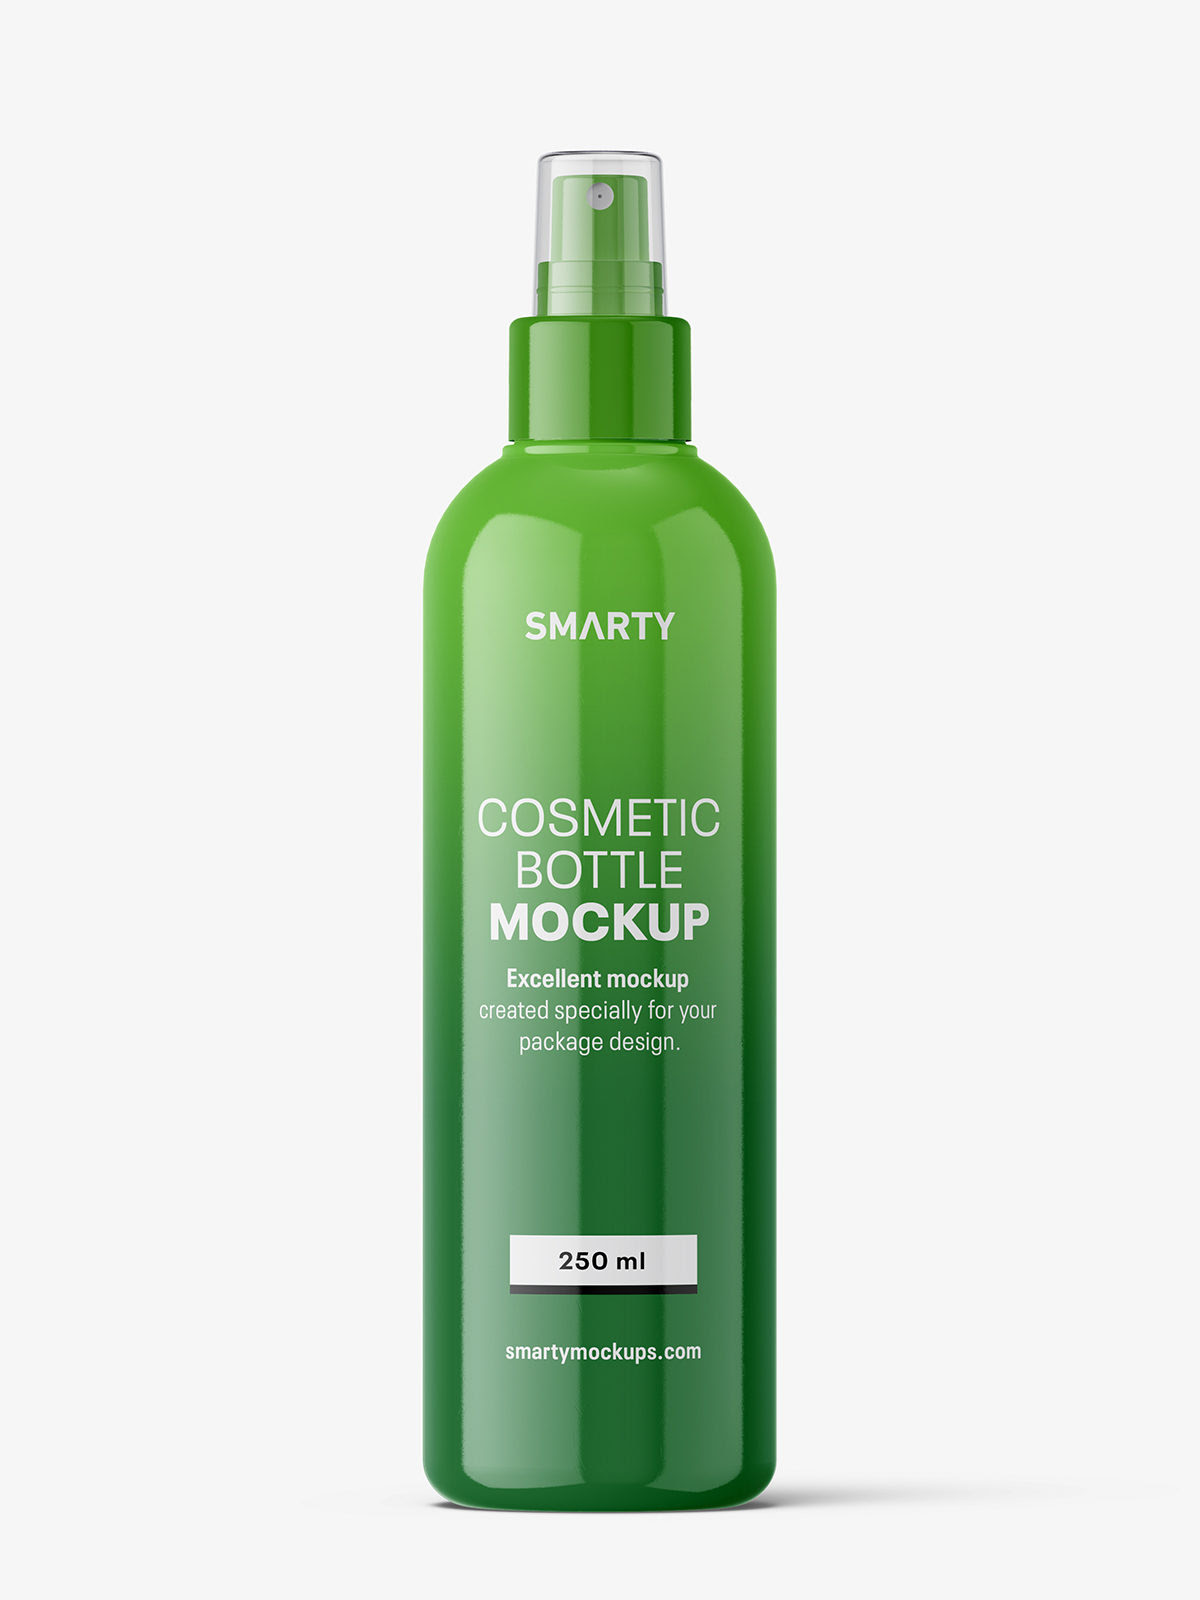 Spray bottle mockup / glossy Smarty Mockups